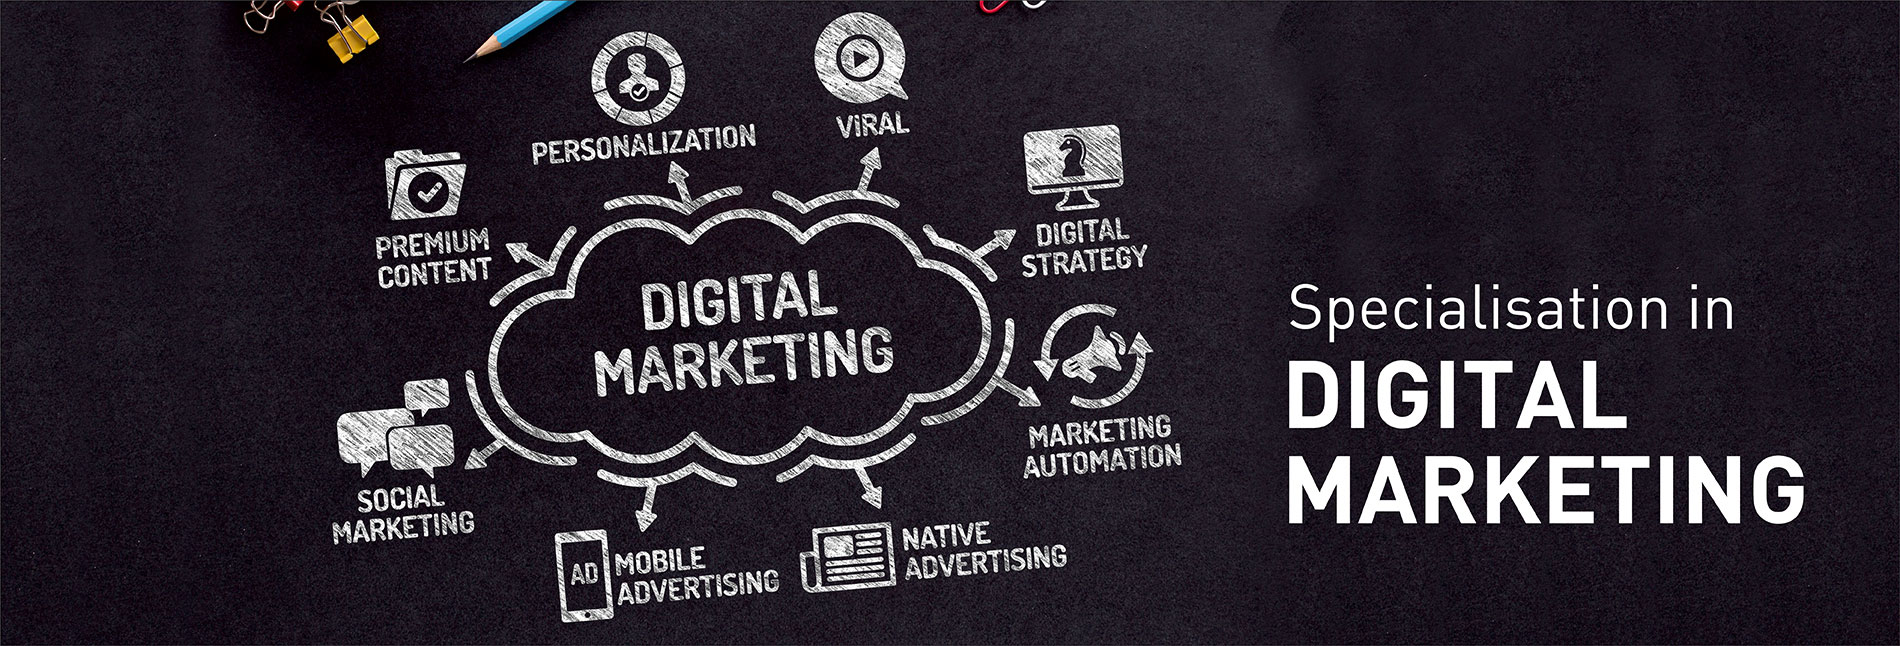 Specialsation in Digital Marketing - Chitkara University